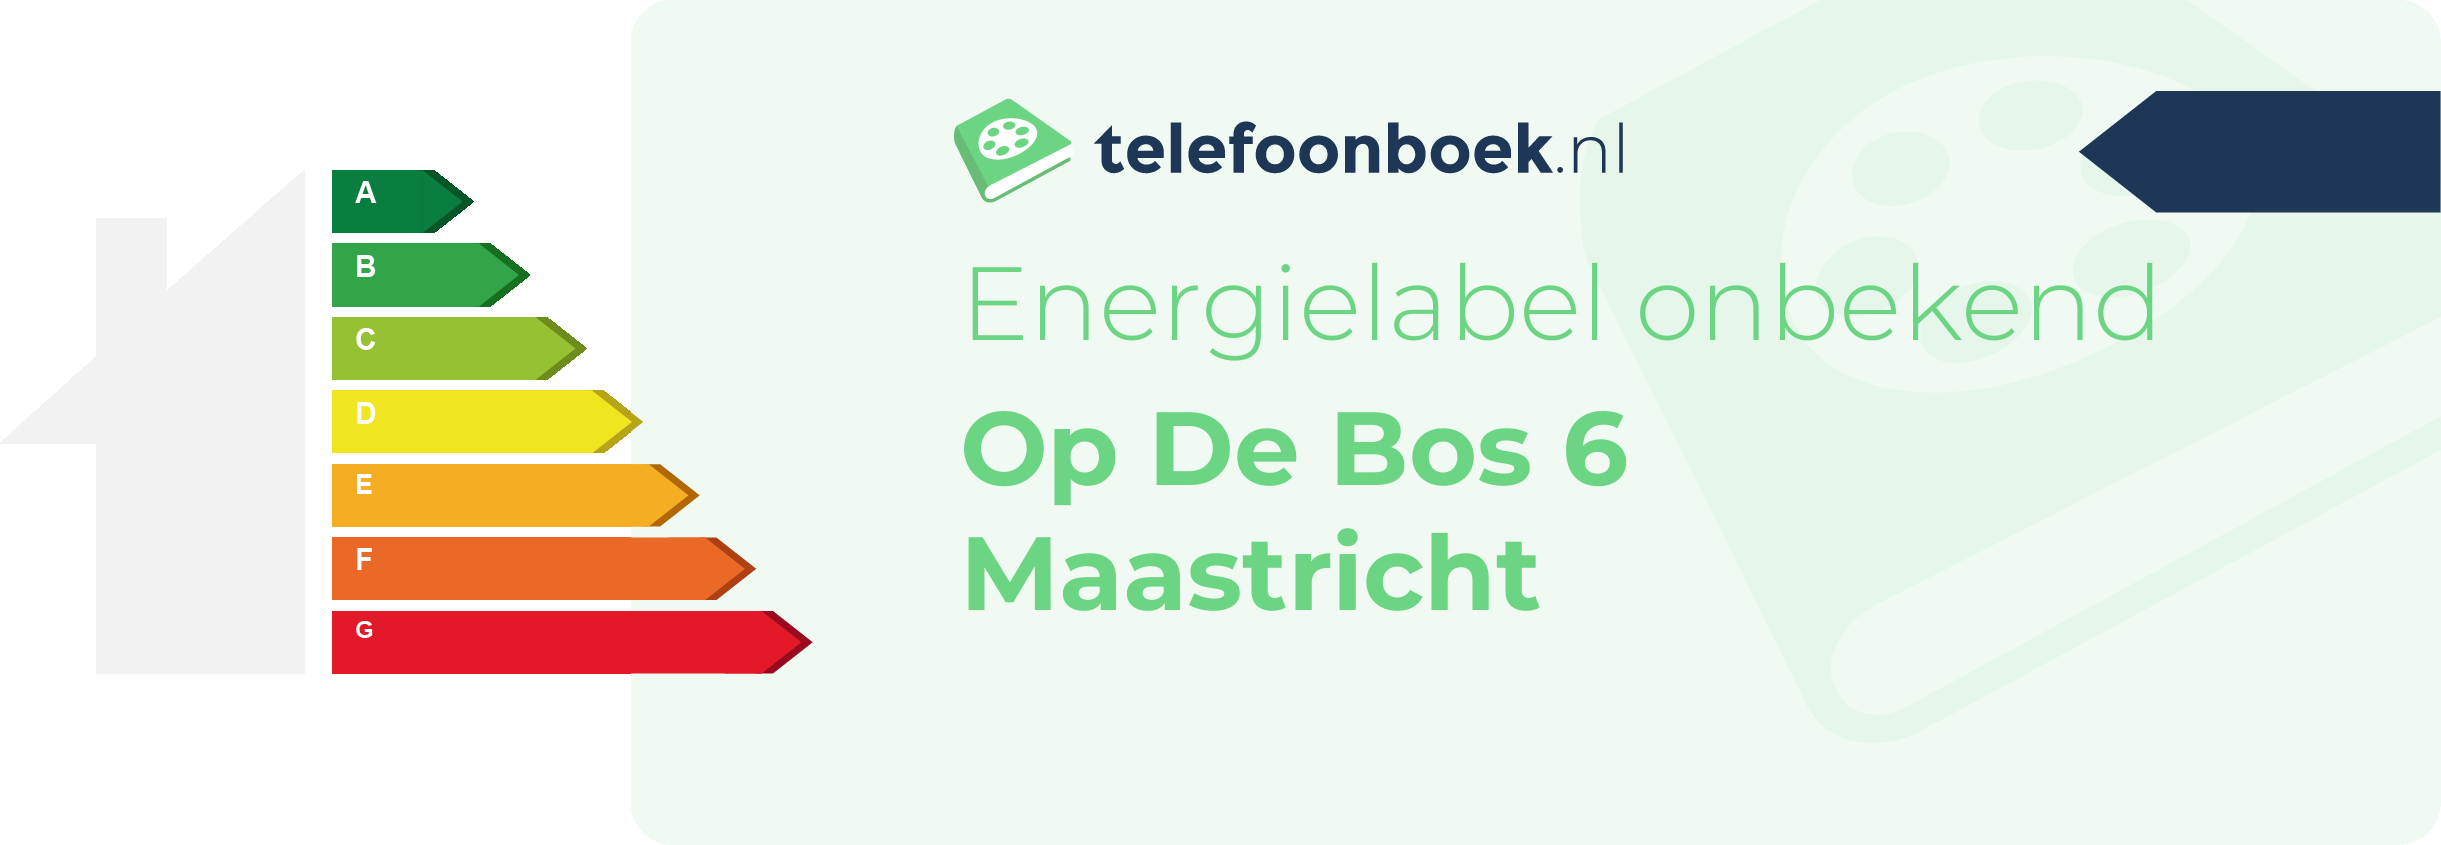 Energielabel Op De Bos 6 Maastricht